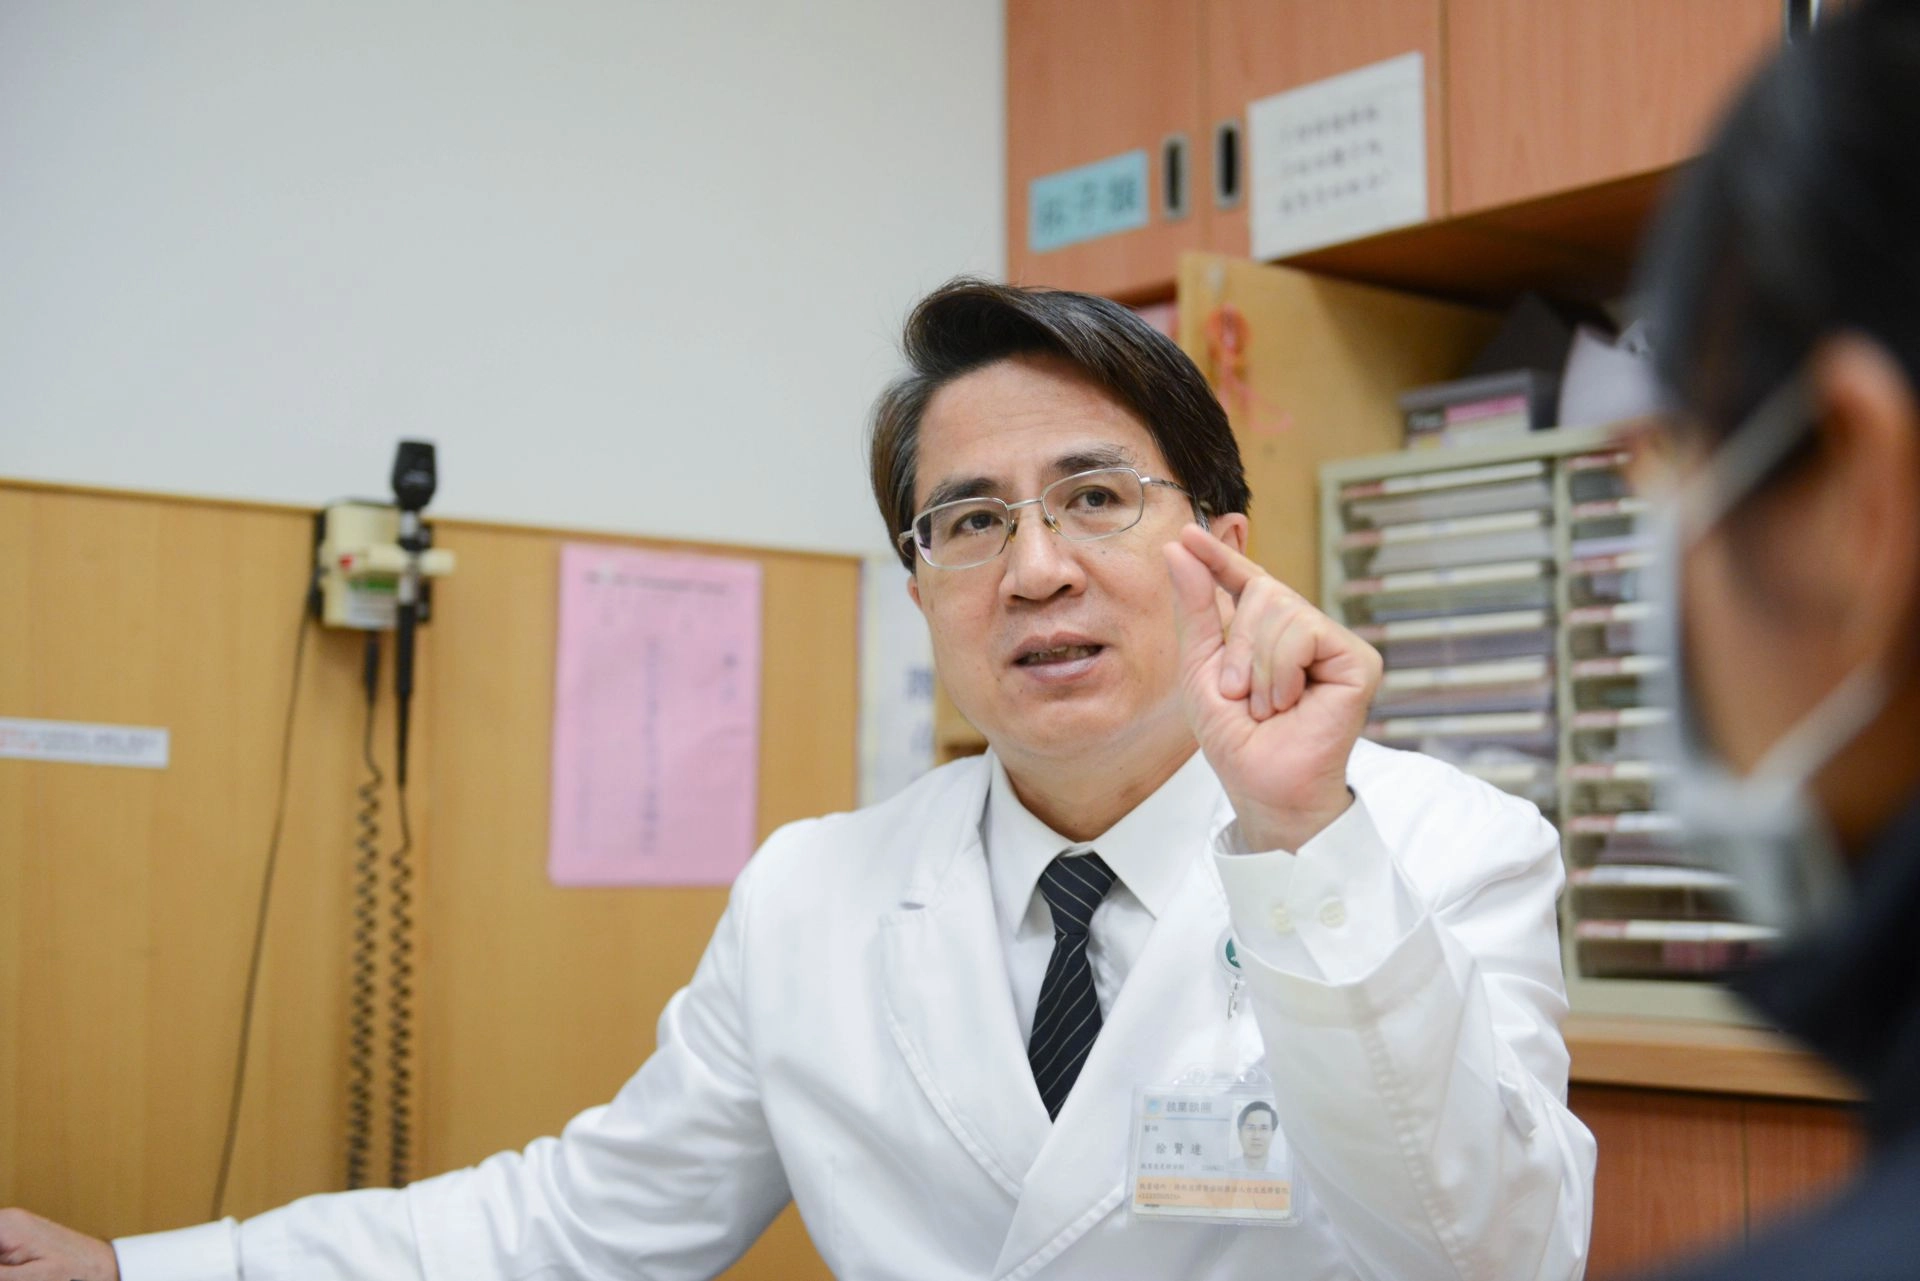 台北慈濟醫院神經外科徐賢達主任看診示意照。